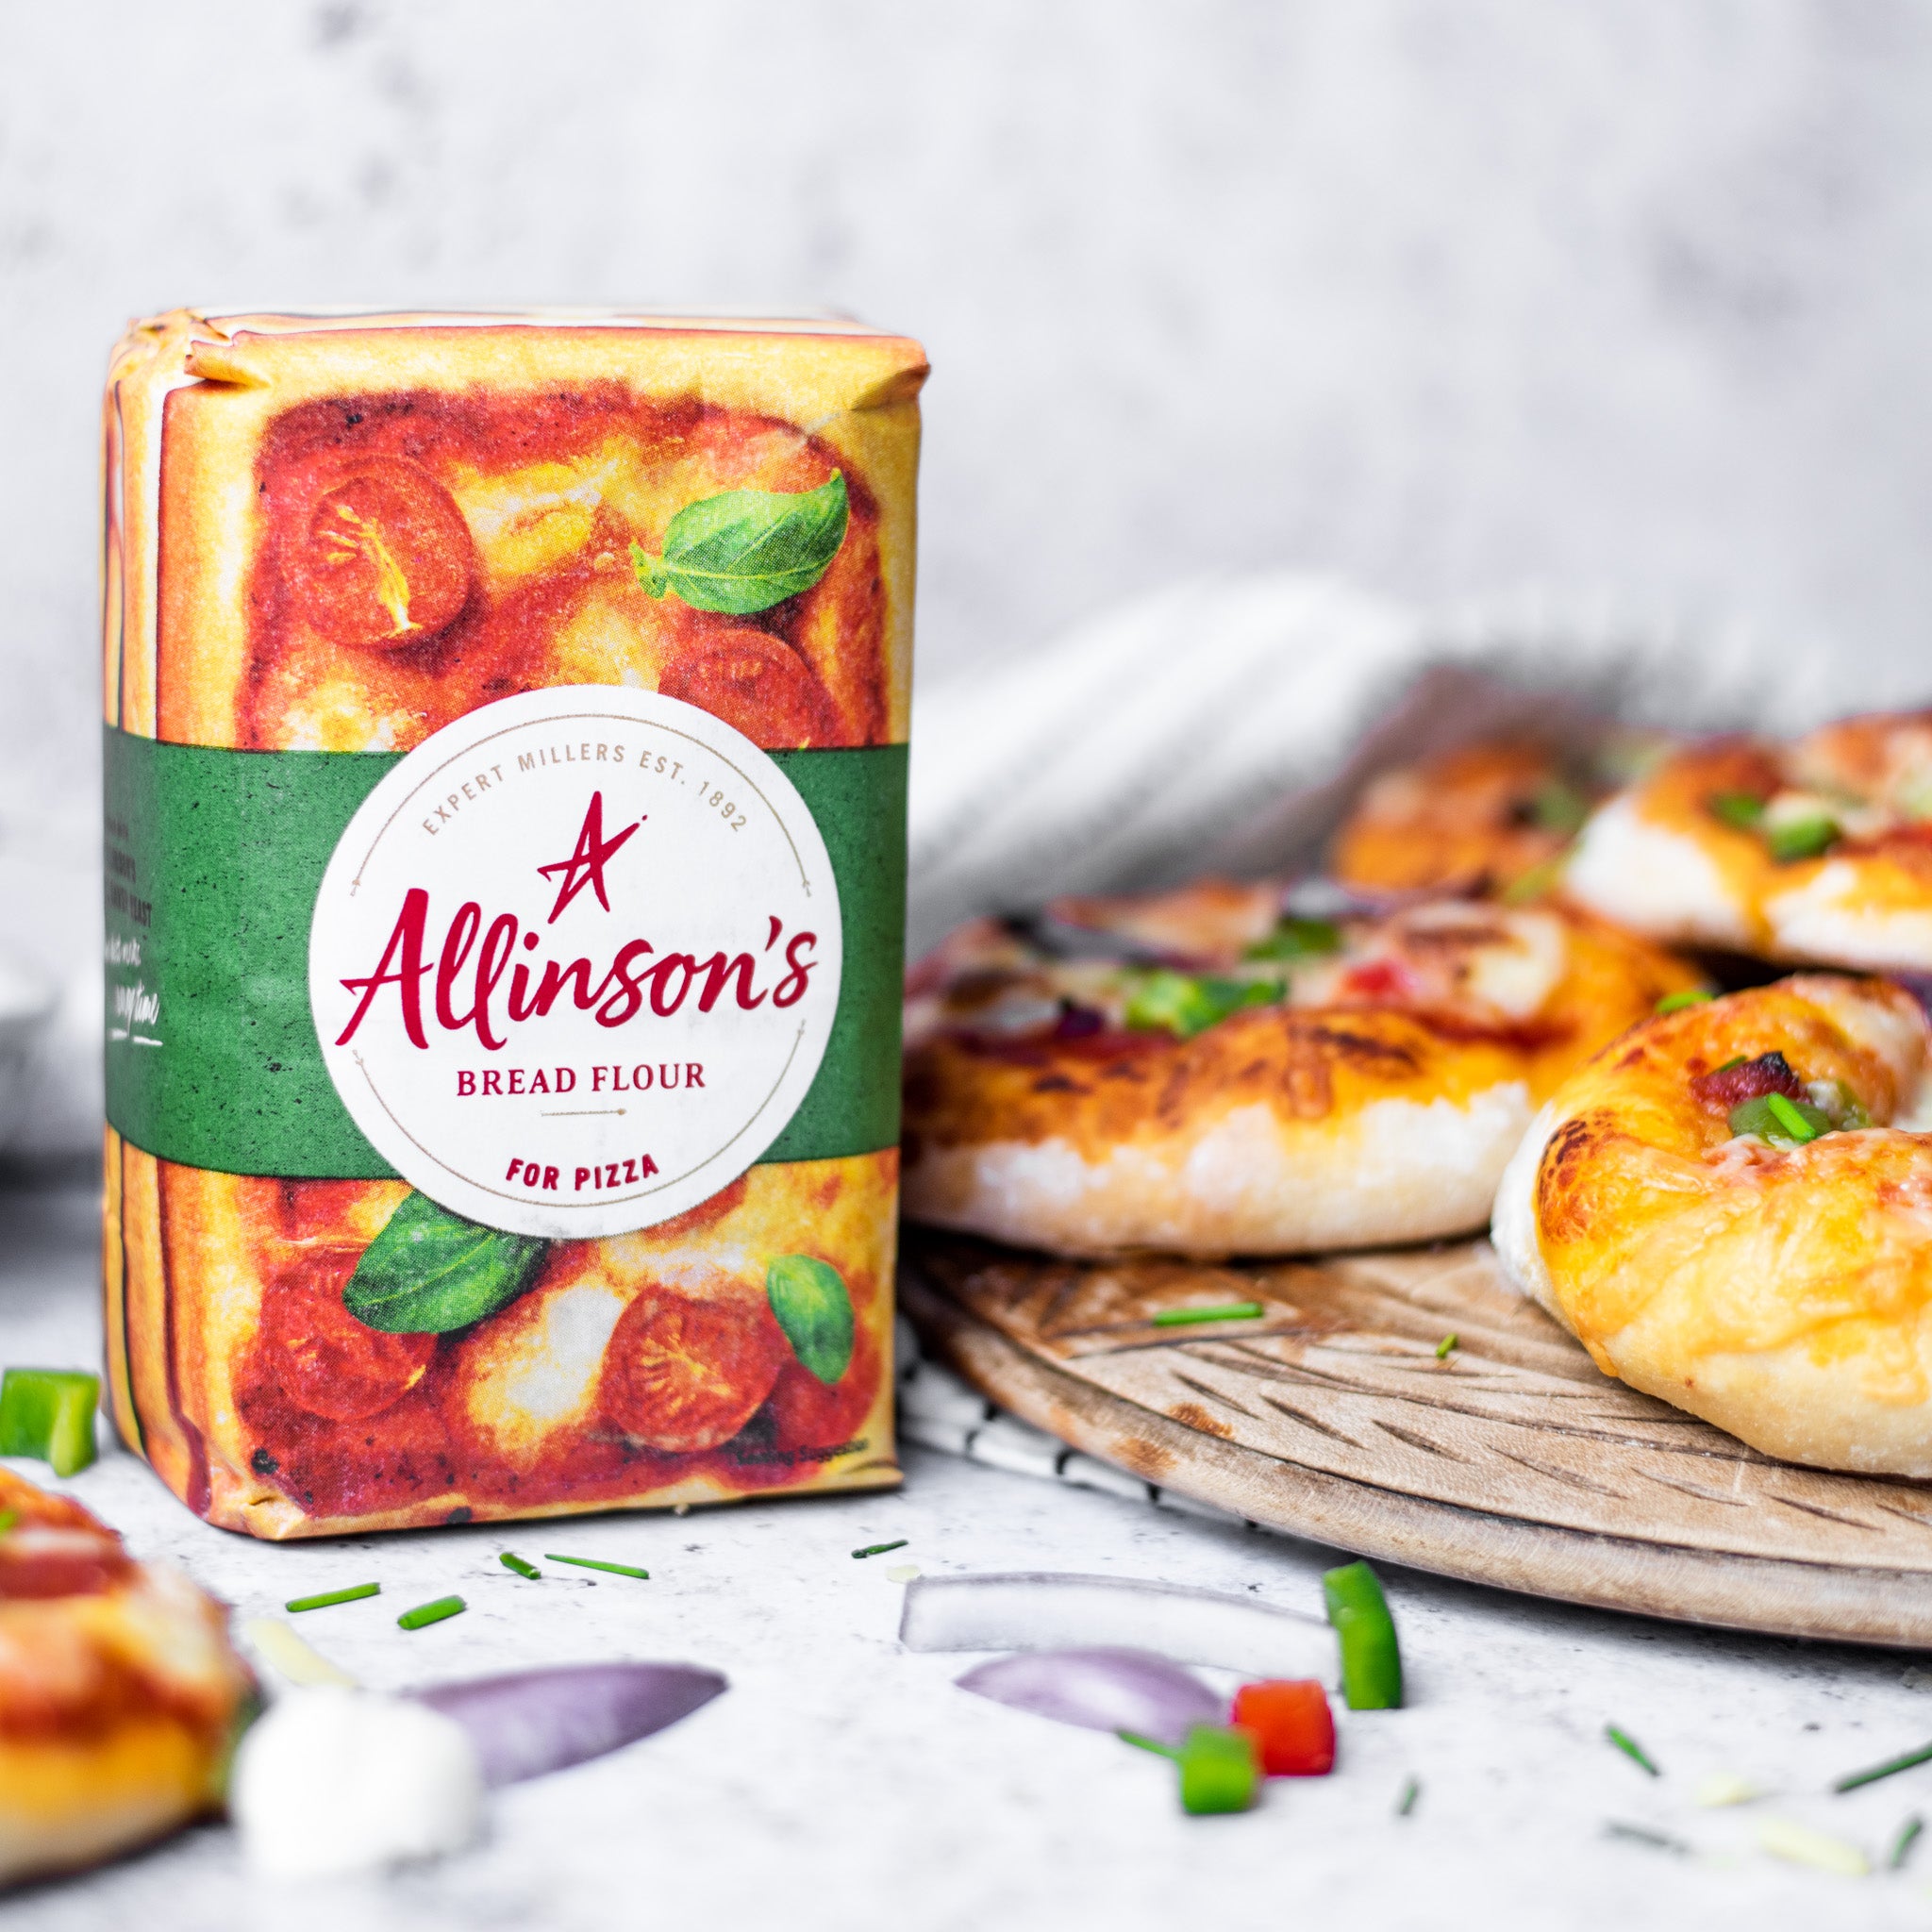 Allinsons-Stuffed-Mini-Pizzas-1-1-Baking-Mad-7.jpg